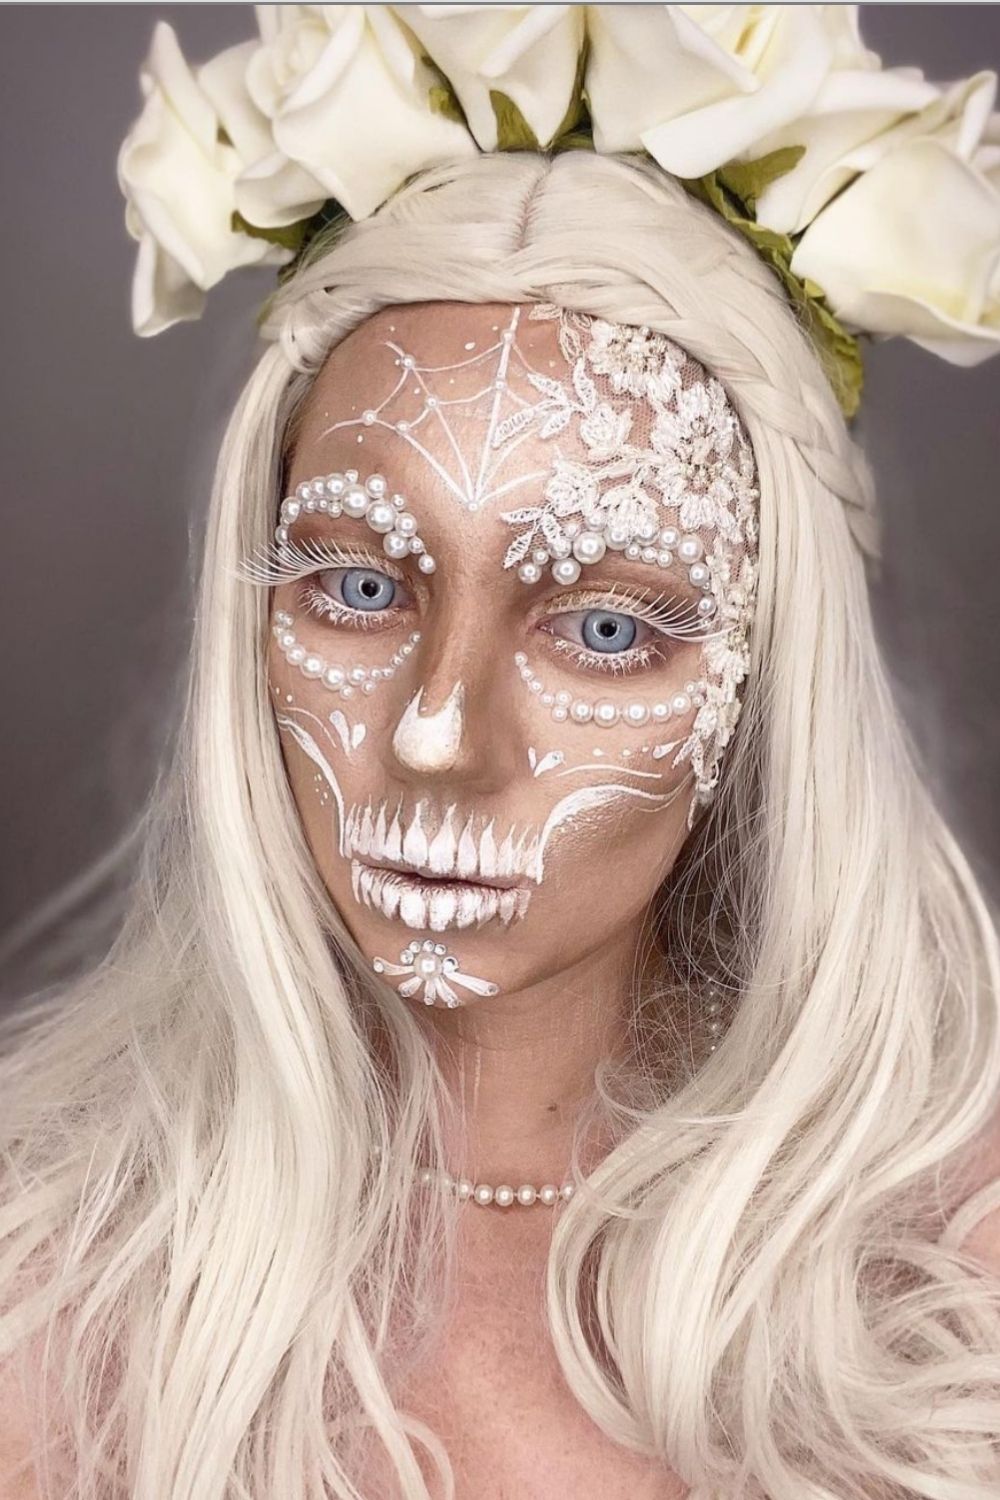 How To Do Sugar Skull Makeup